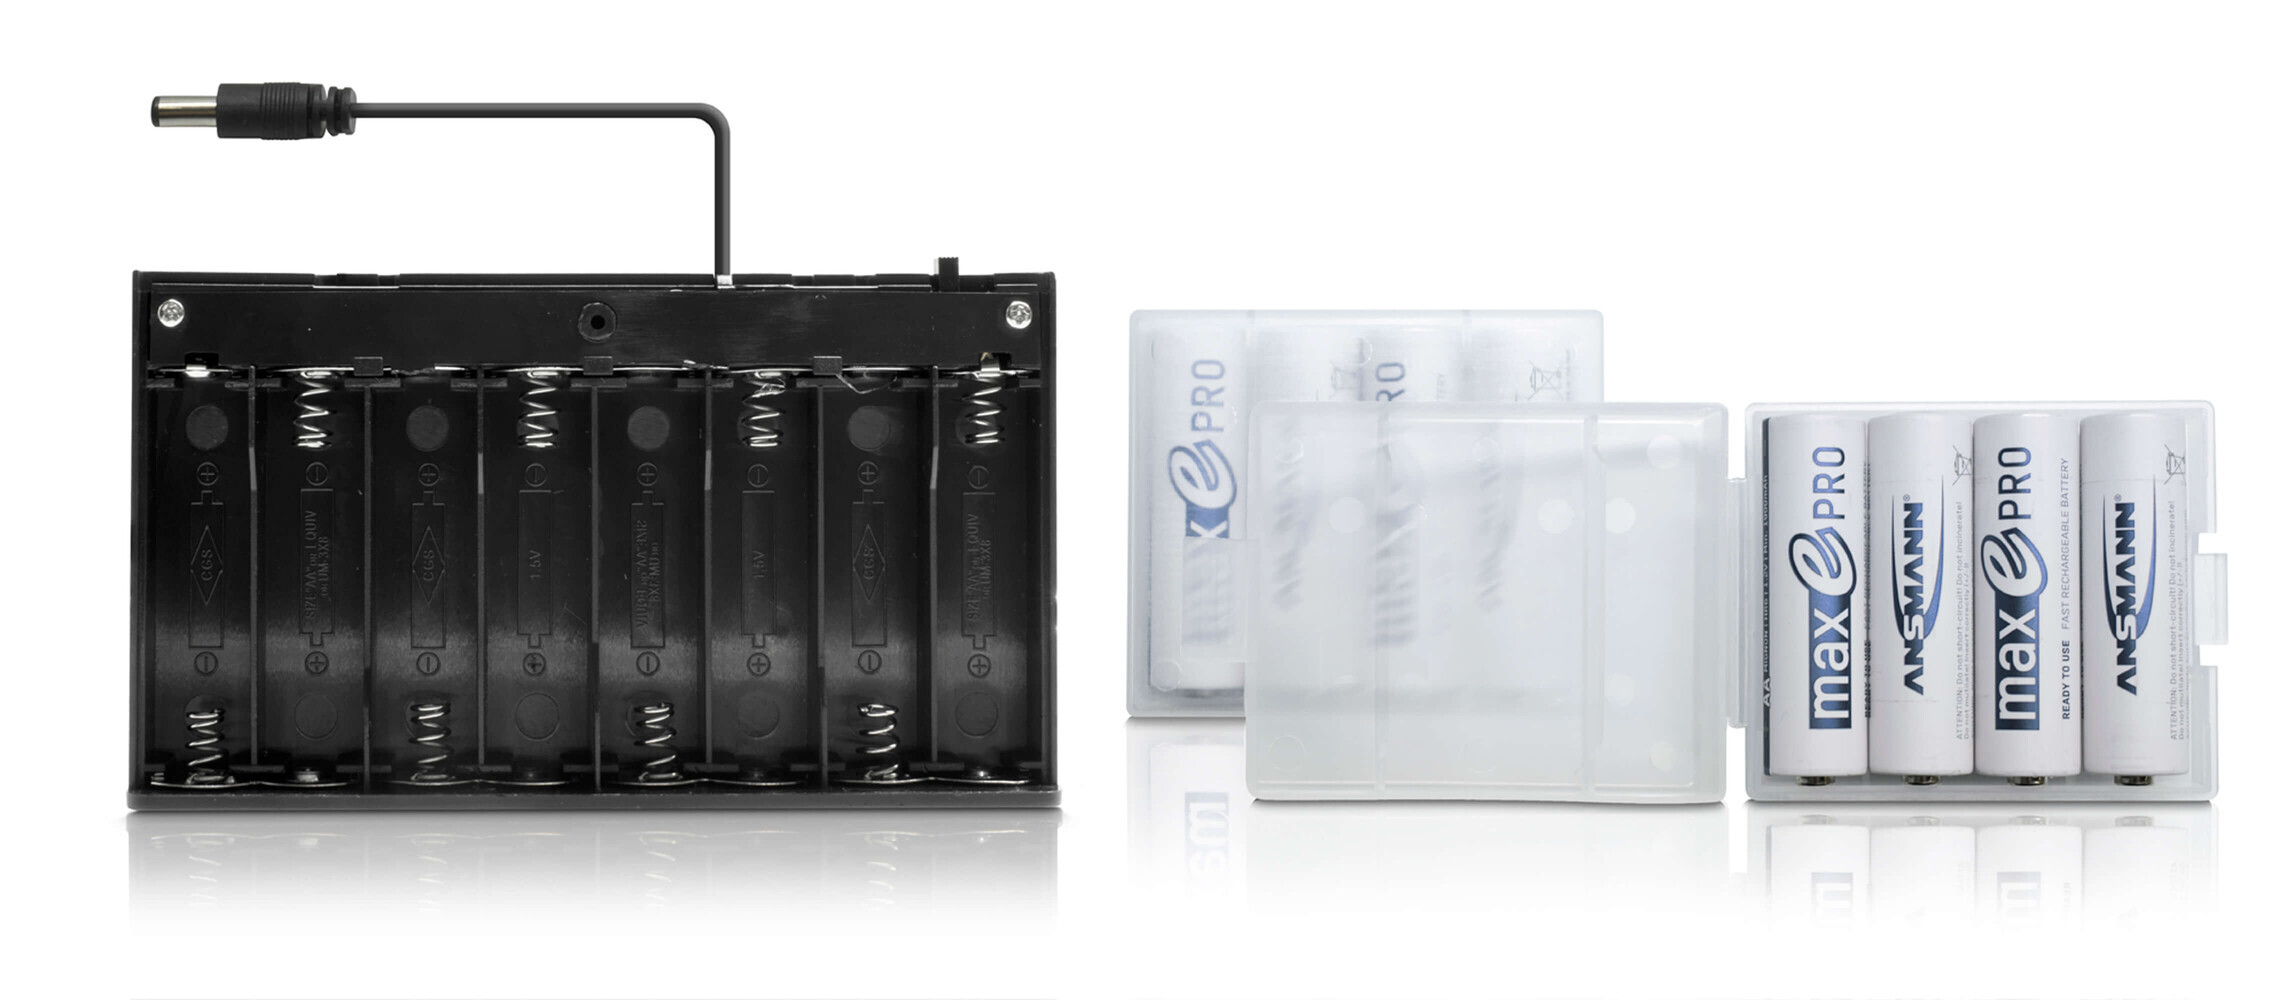 Batteriebox für mobile LED Anwendungen - tragbar und effizient